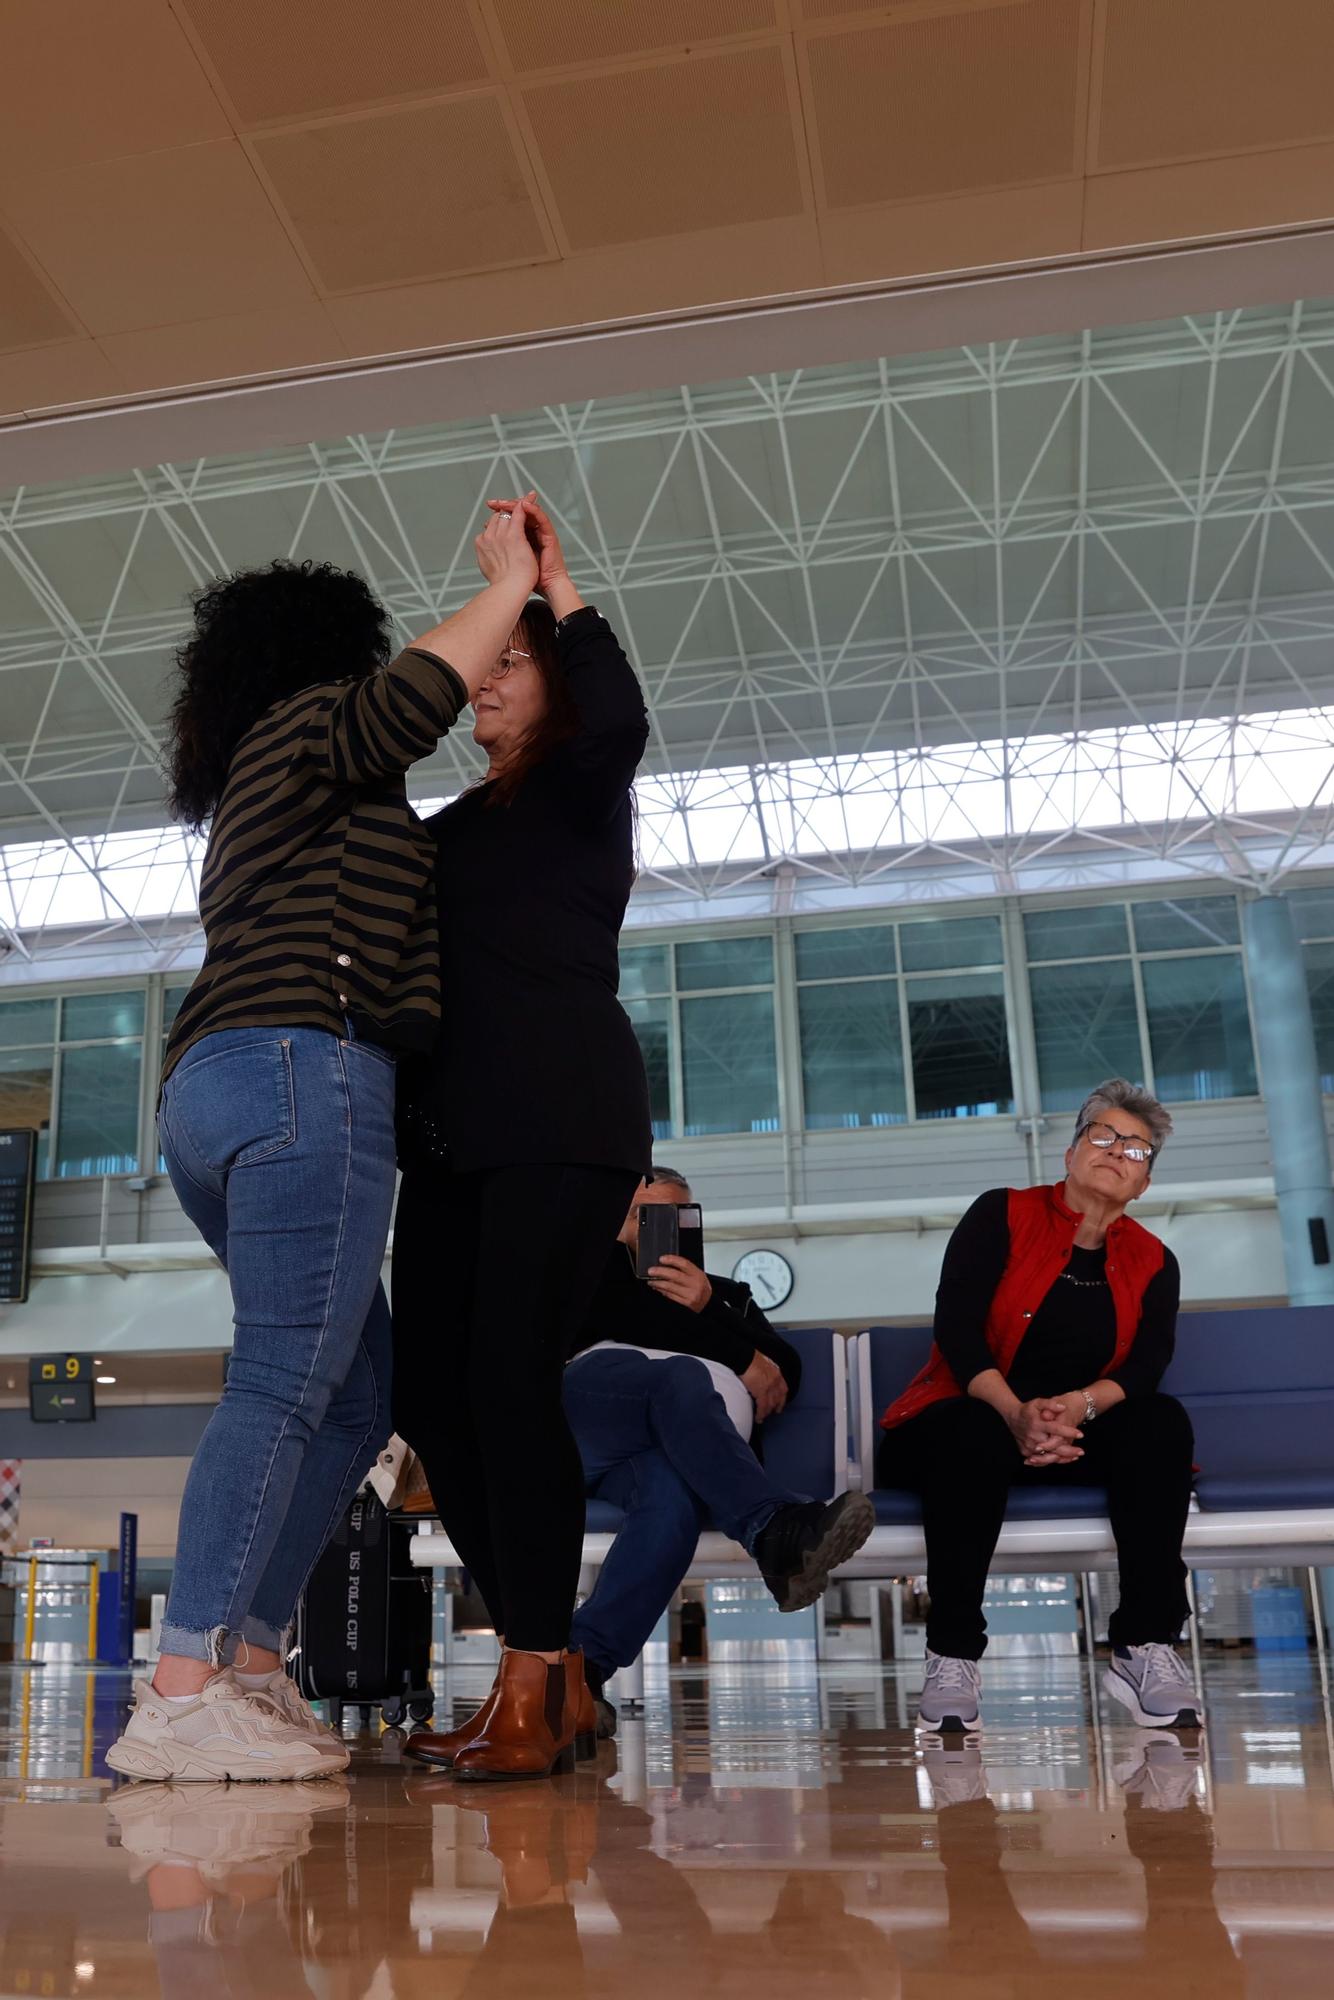 El Día de la Poesía en la comarca de Avilés: flashmob en el Aerpuerto, exposiciones y recitales